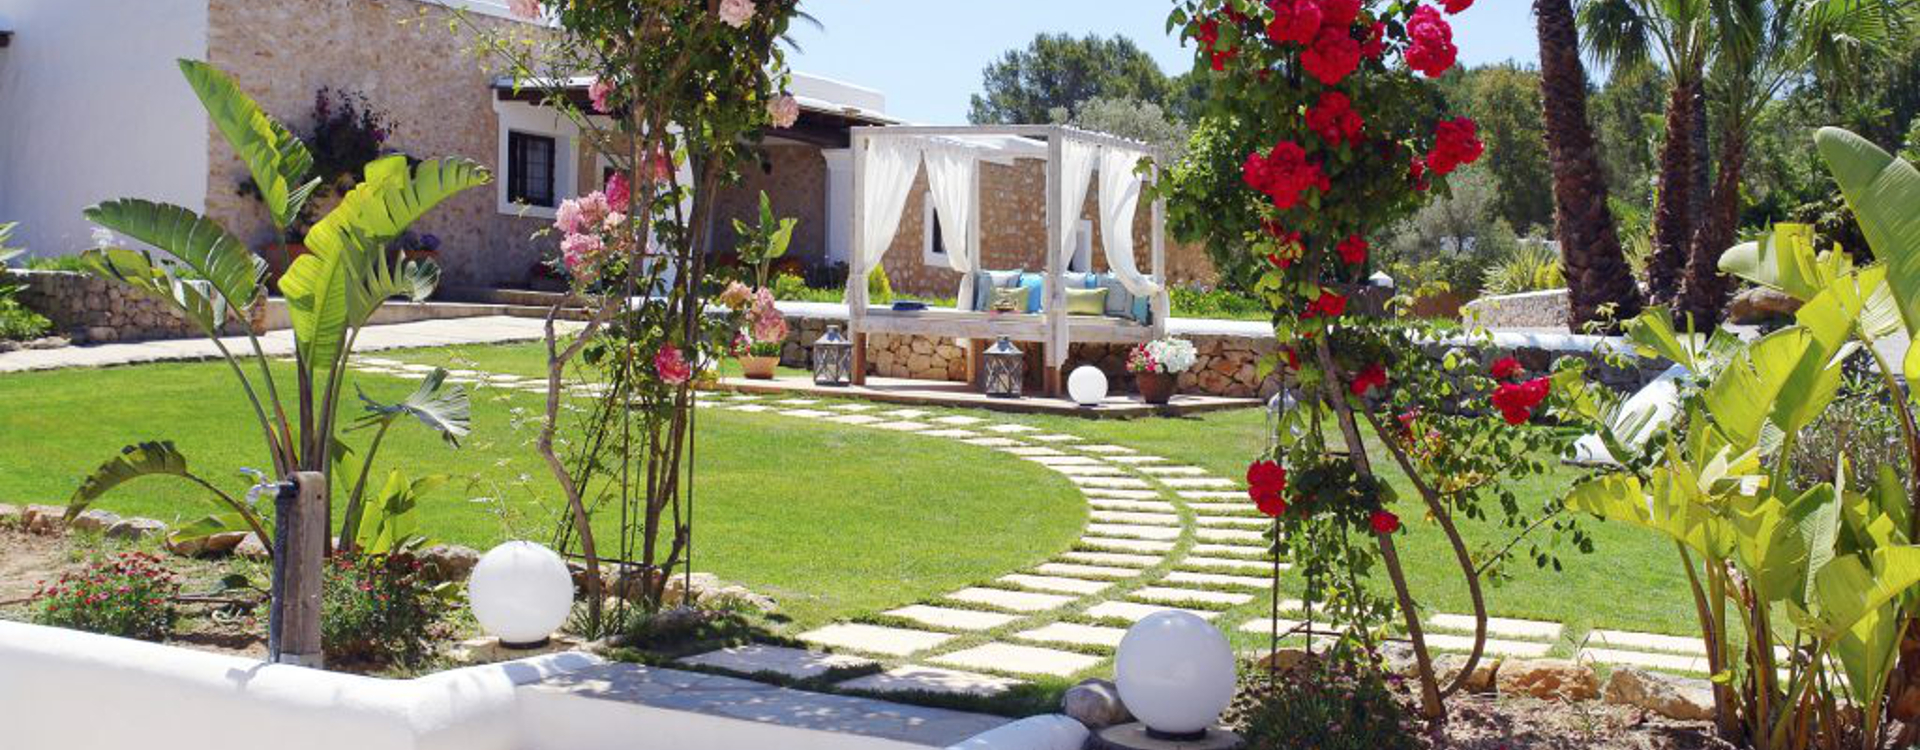 villa garden